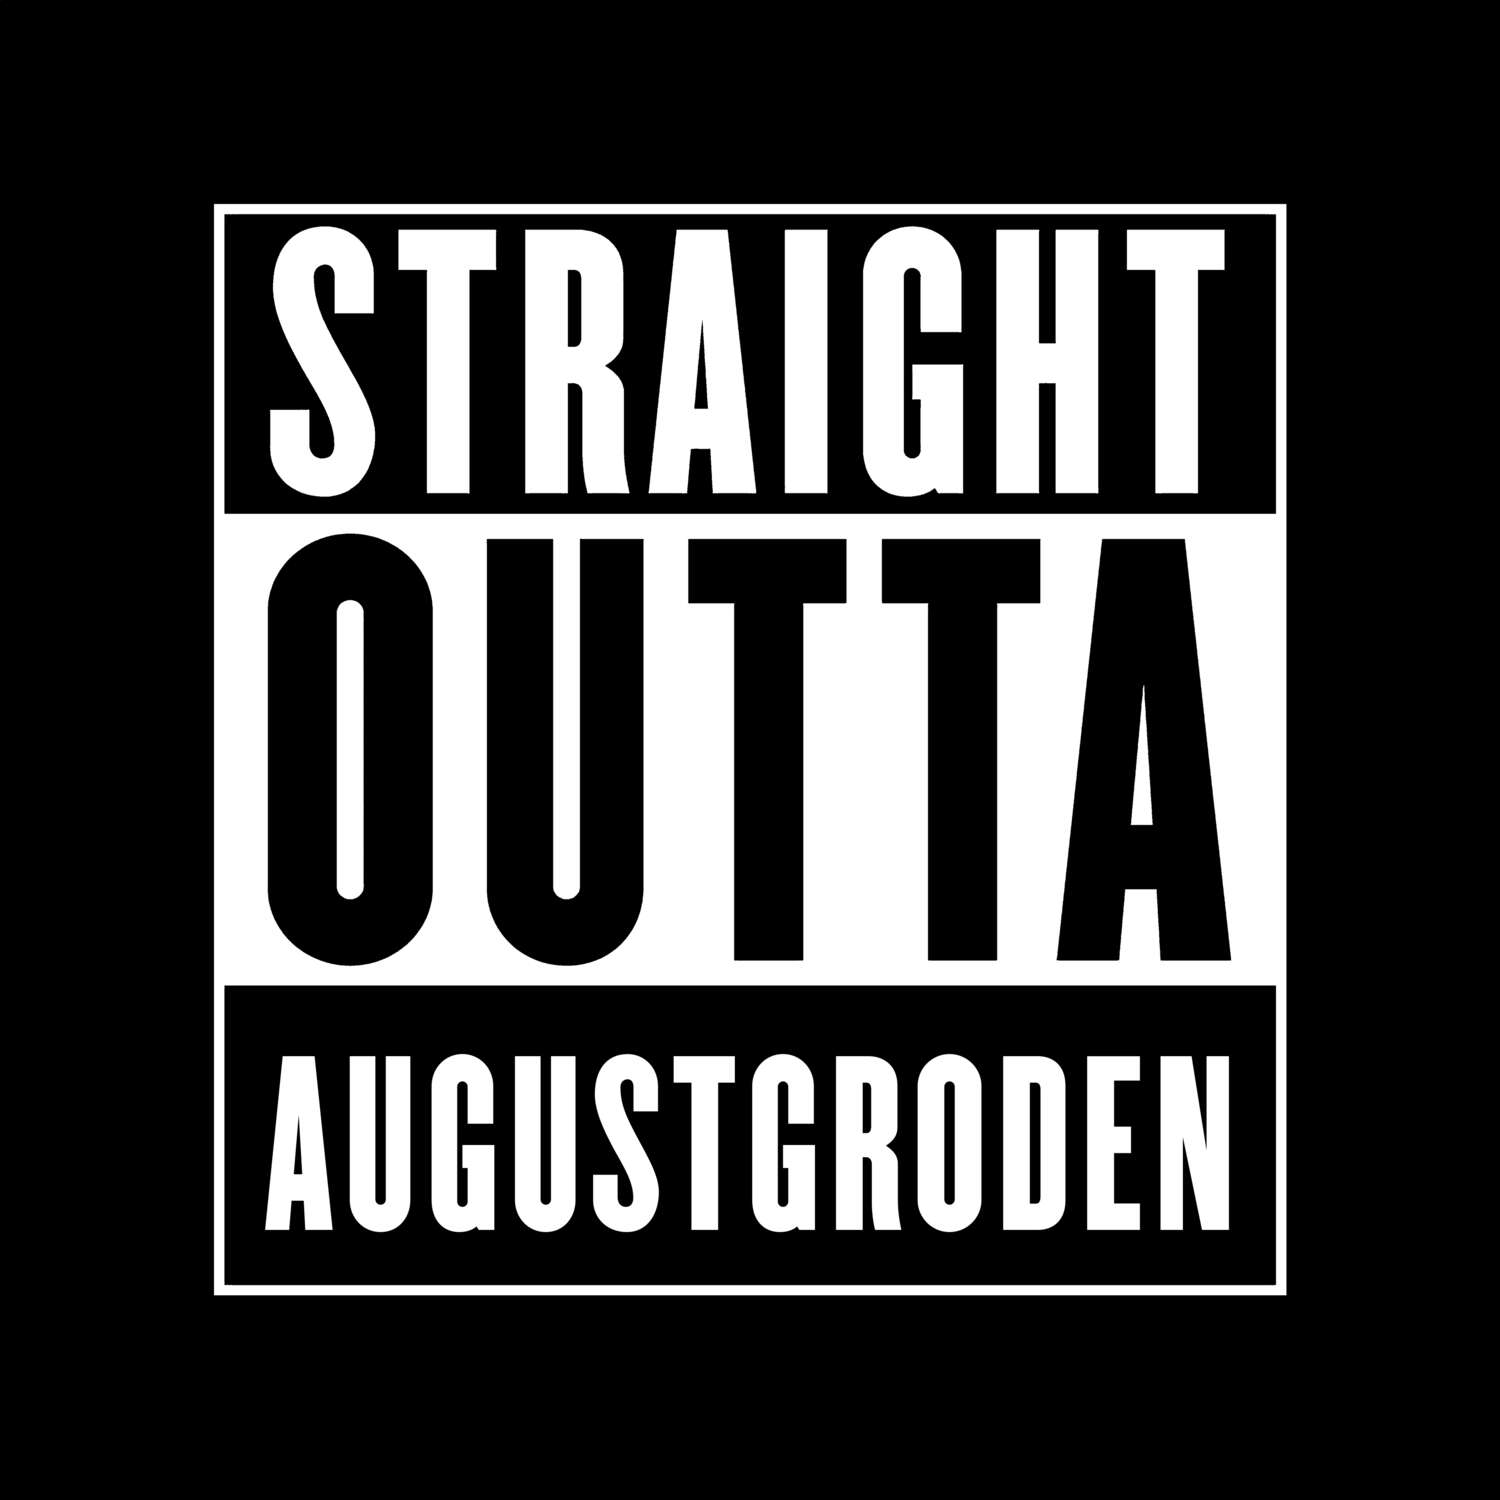 Augustgroden T-Shirt »Straight Outta«